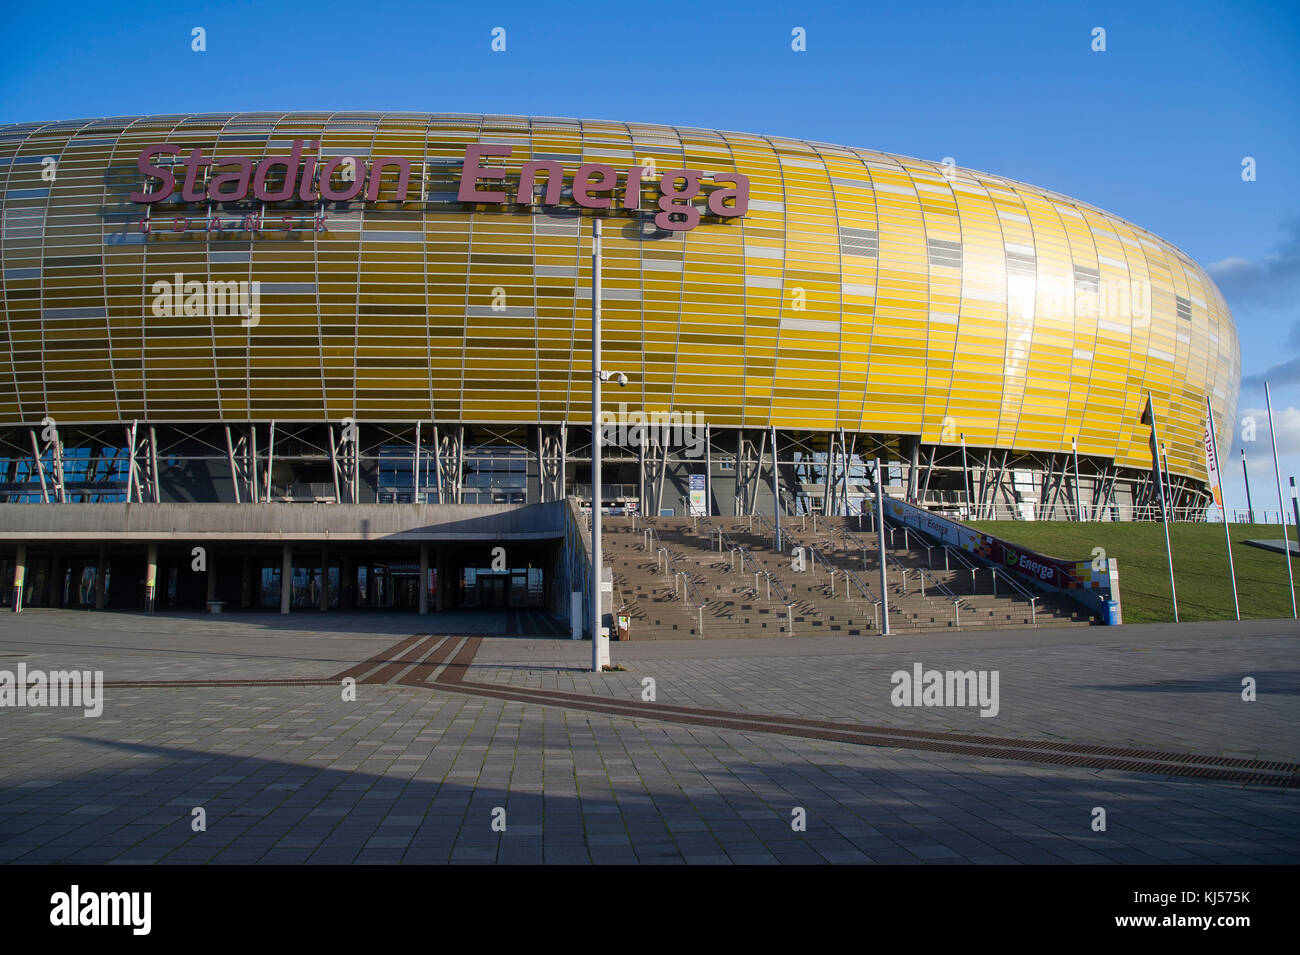 Stadion Energa Danzig in Danzig, Polen. 17. November 2017. Home Fußball Team Lechia Gdansk. Mit einer Kapazität von 41,620 Zuschauer ist die größte Arena i Stockfoto